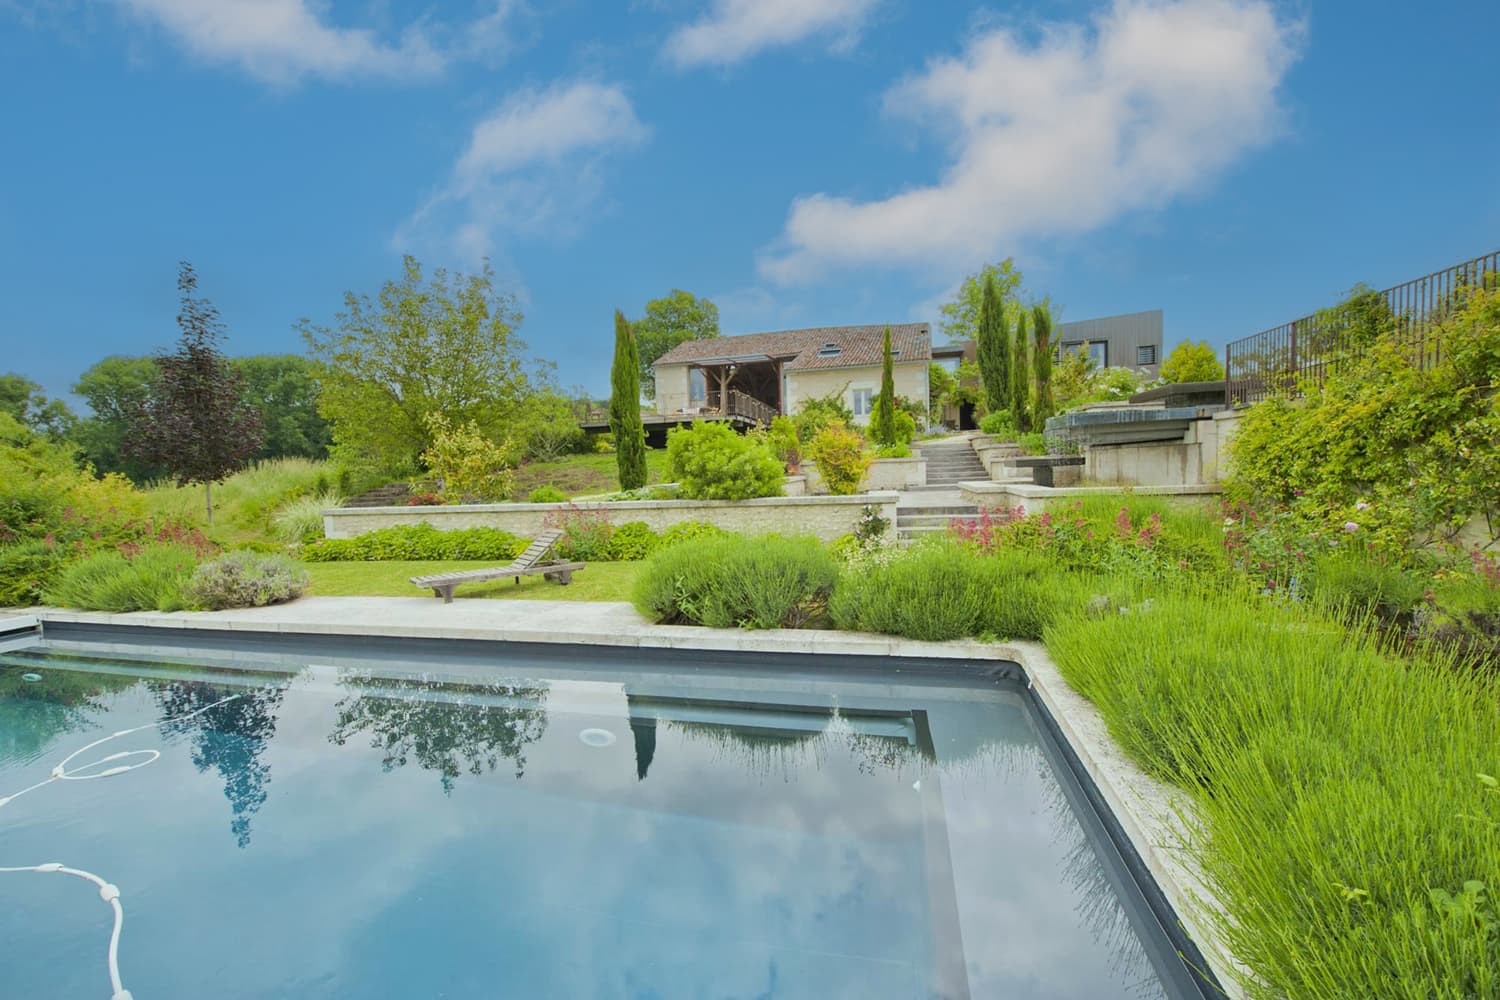 Location maison en Dordogne avec piscine privée chauffée à l'énergie solaire